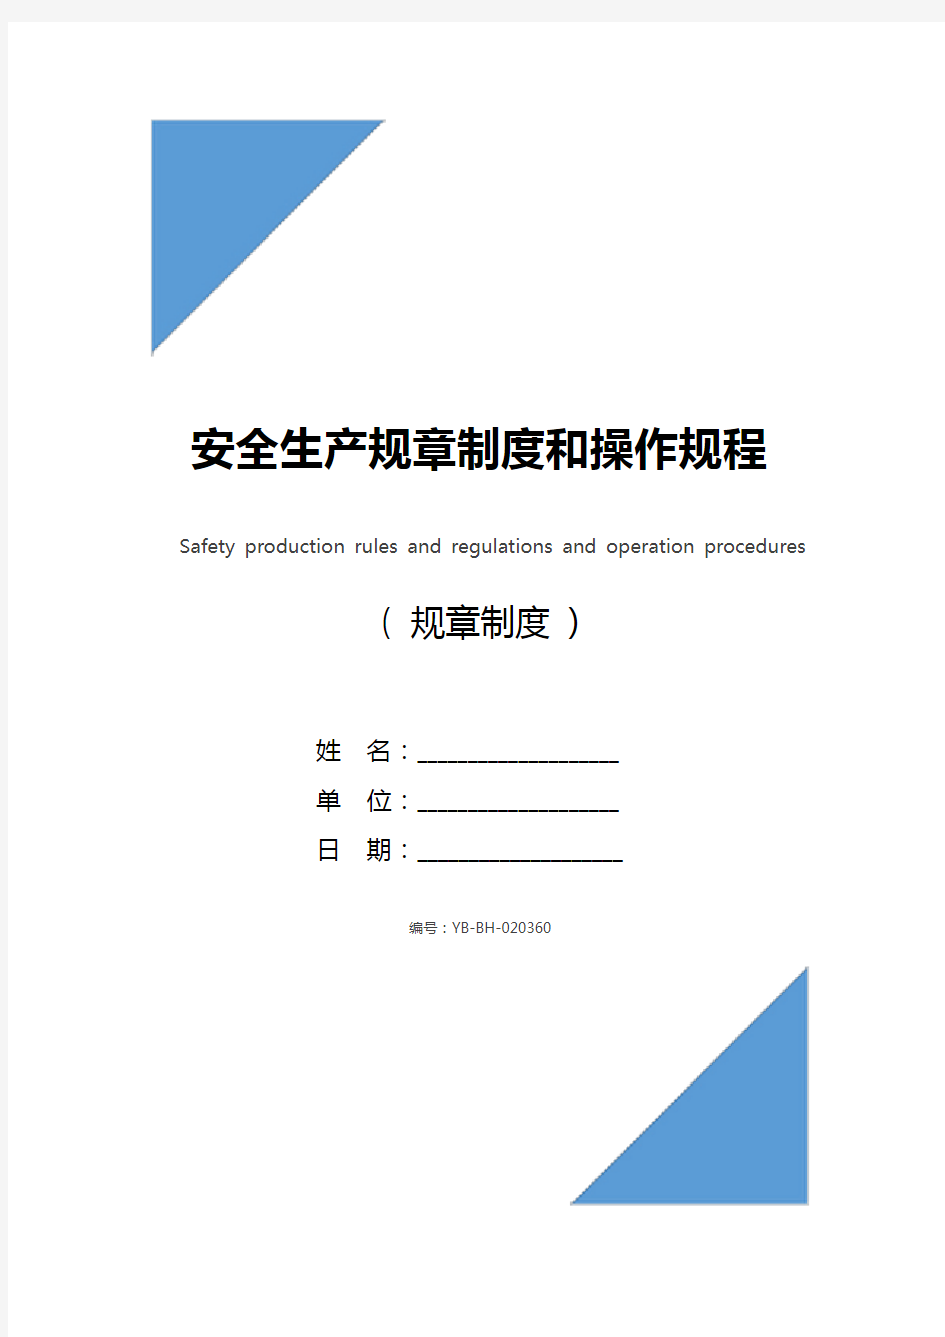 安全生产规章制度和操作规程